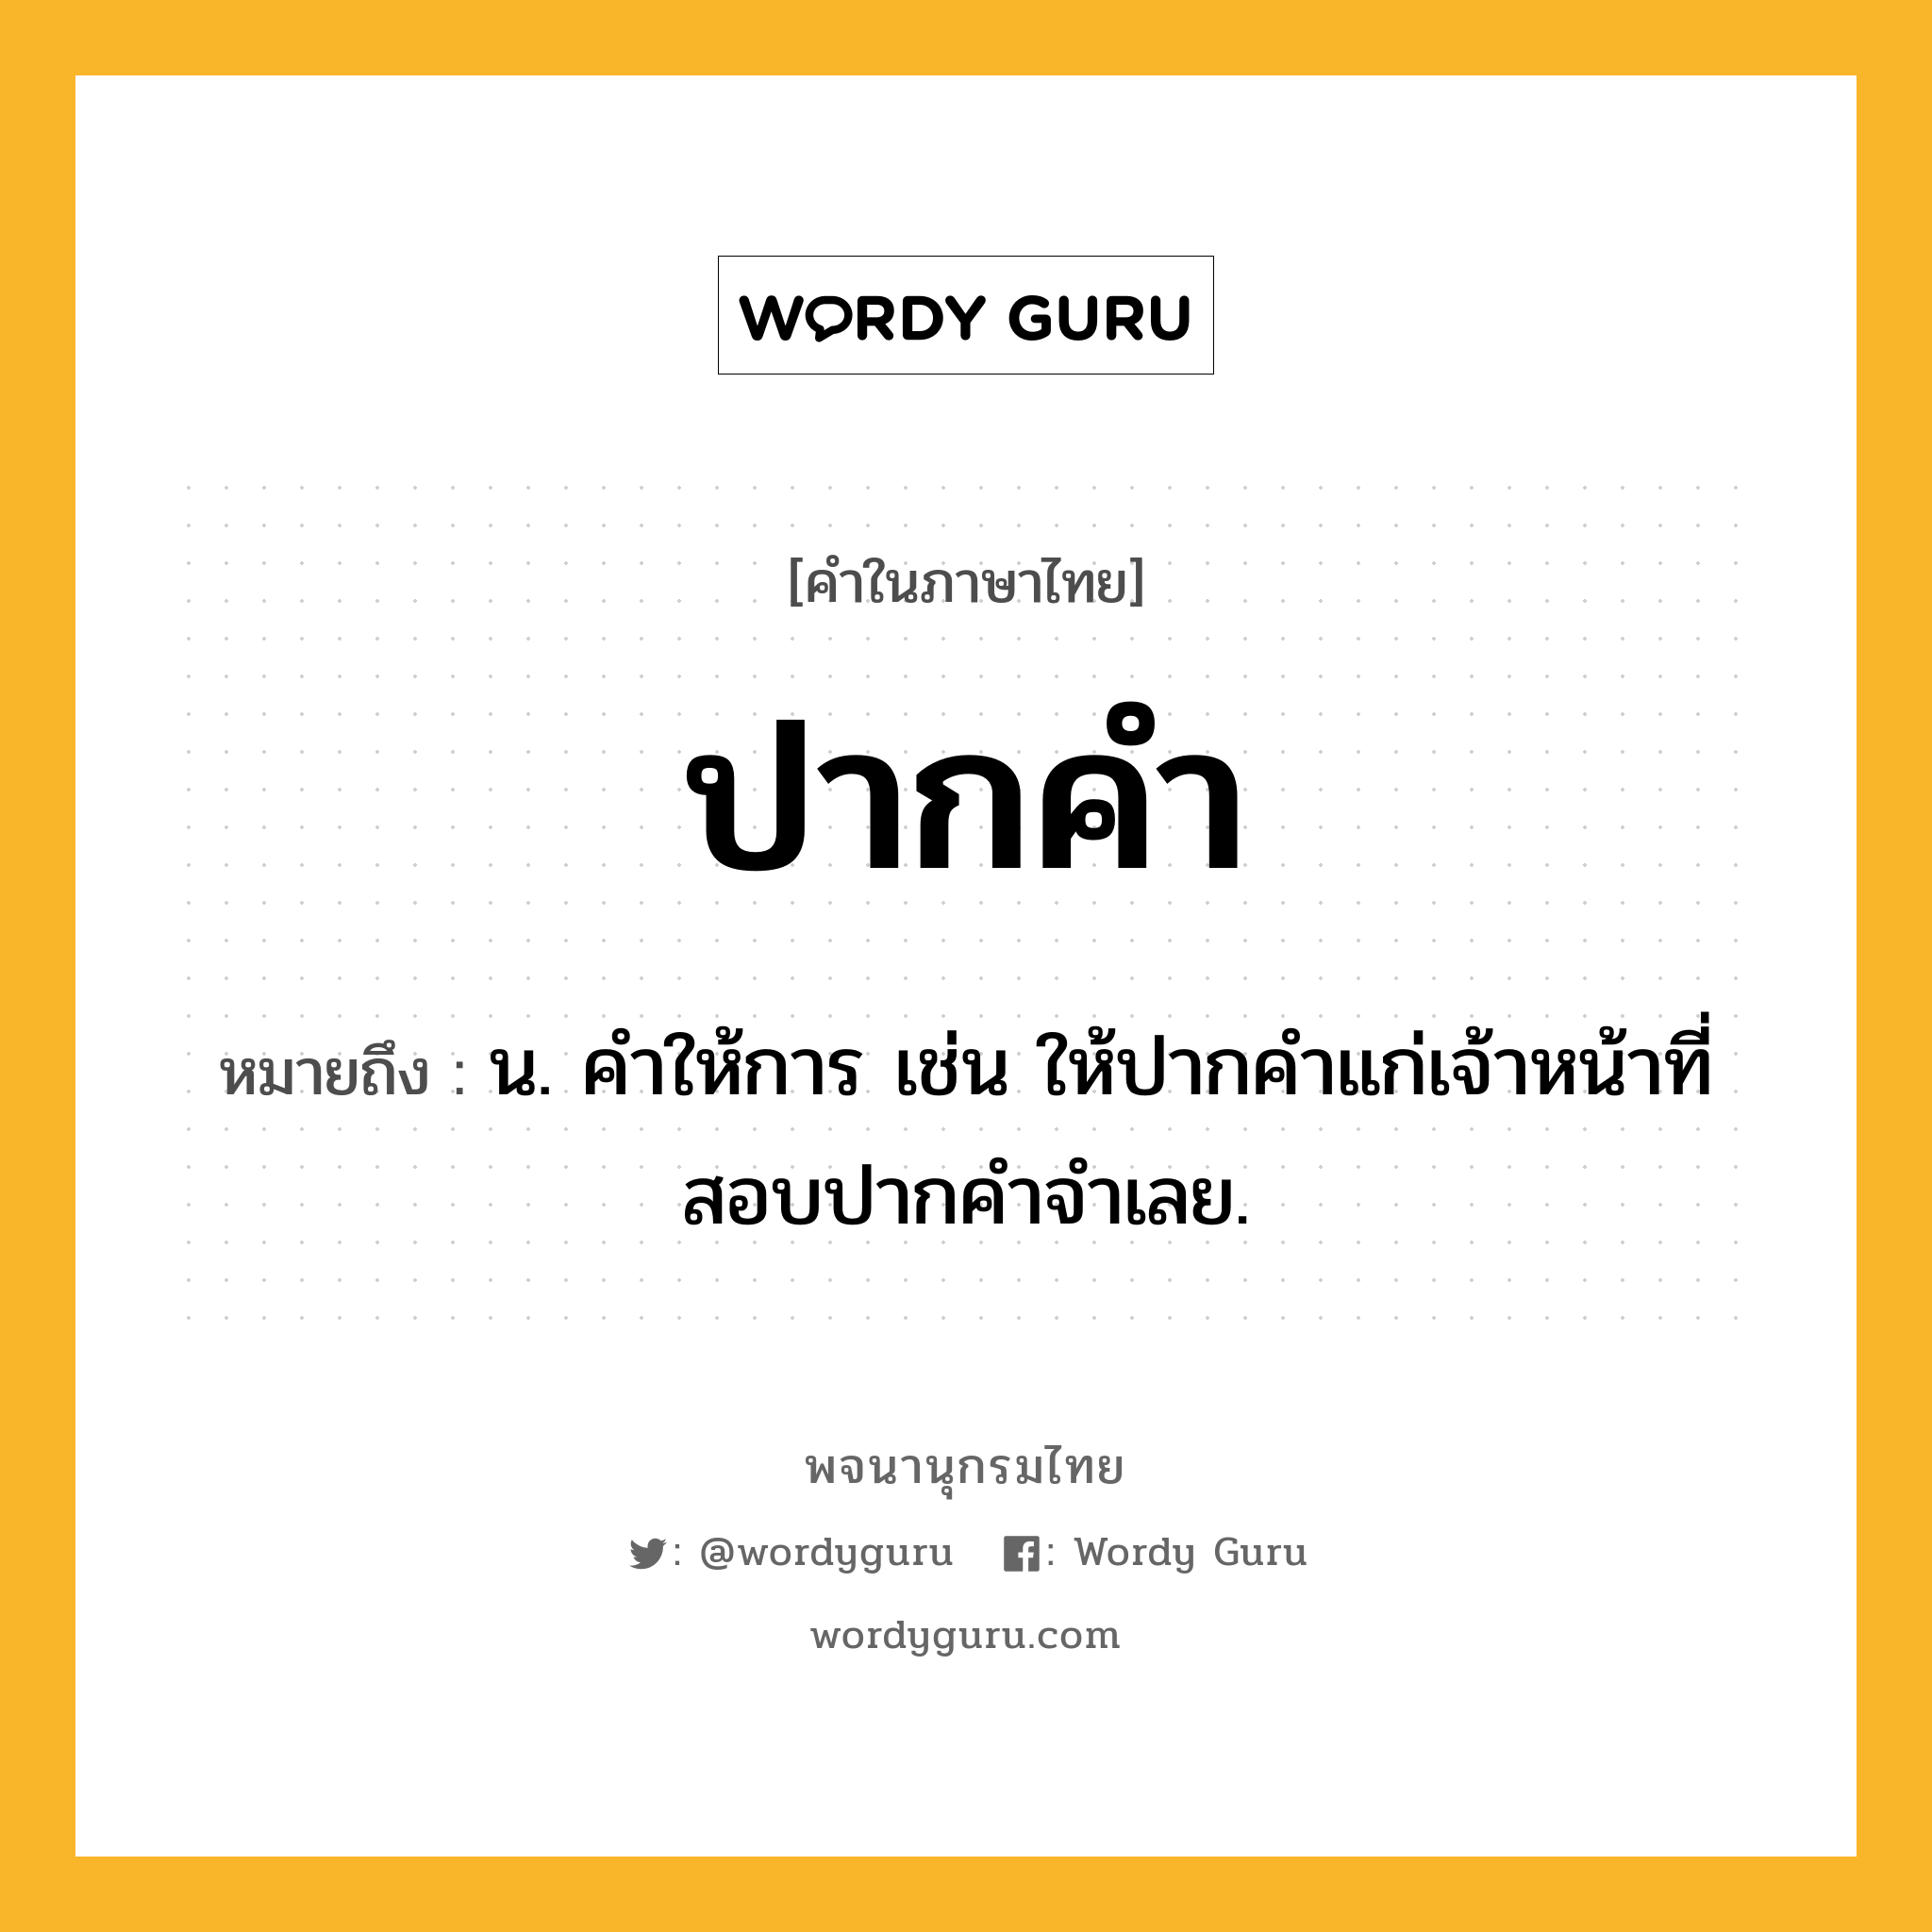 ปากคำ หมายถึงอะไร?, คำในภาษาไทย ปากคำ หมายถึง น. คําให้การ เช่น ให้ปากคำแก่เจ้าหน้าที่สอบปากคำจำเลย.